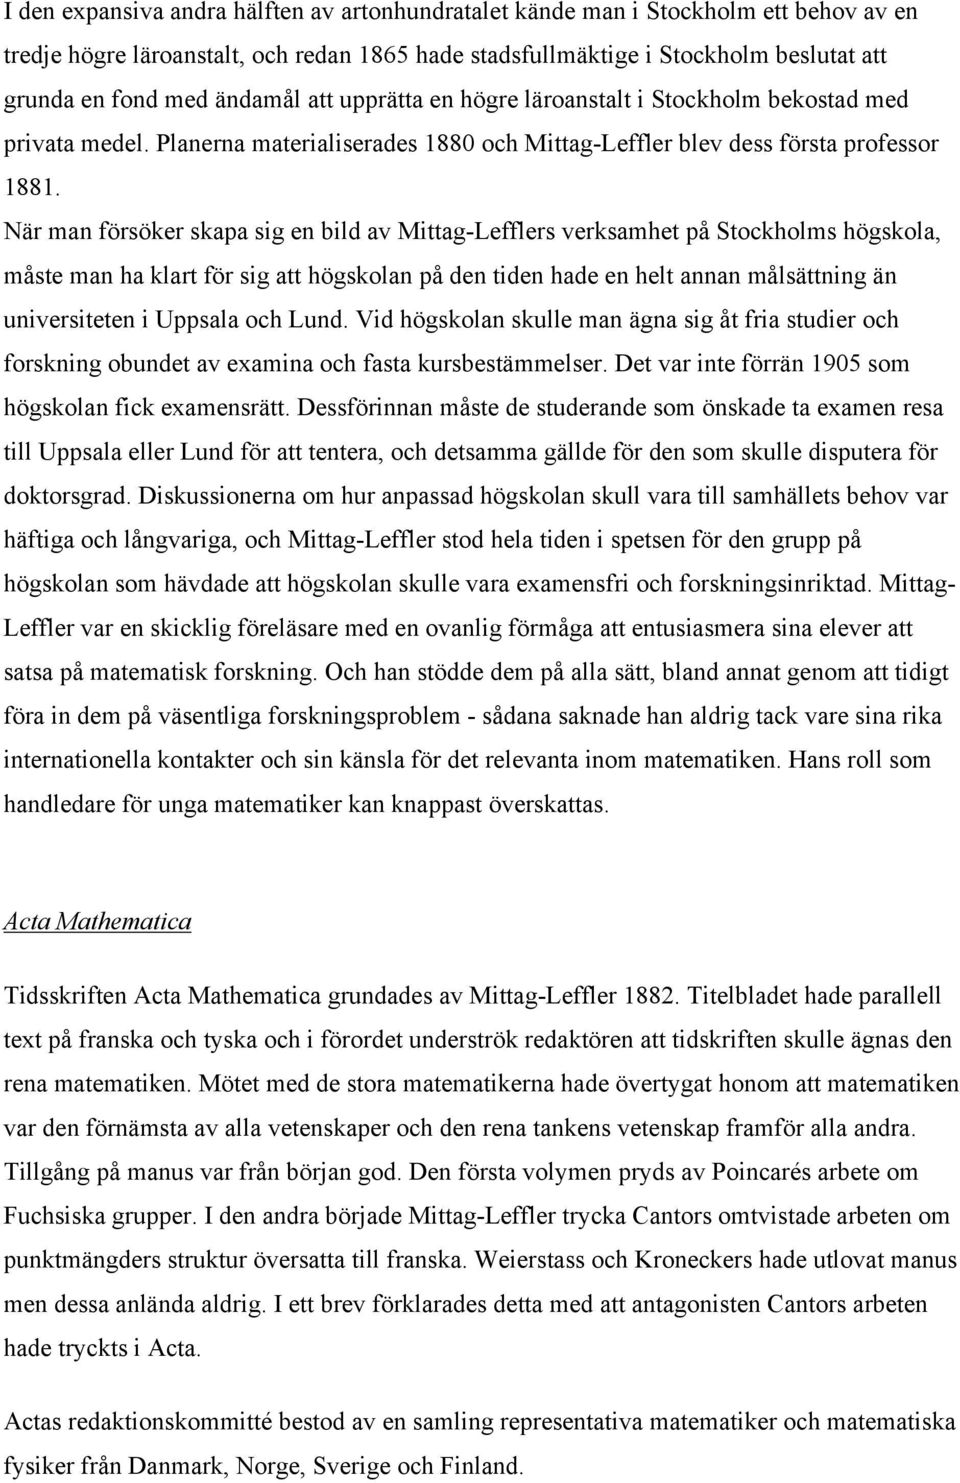 När man försöker skapa sig en bild av Mittag-Lefflers verksamhet på Stockholms högskola, måste man ha klart för sig att högskolan på den tiden hade en helt annan målsättning än universiteten i